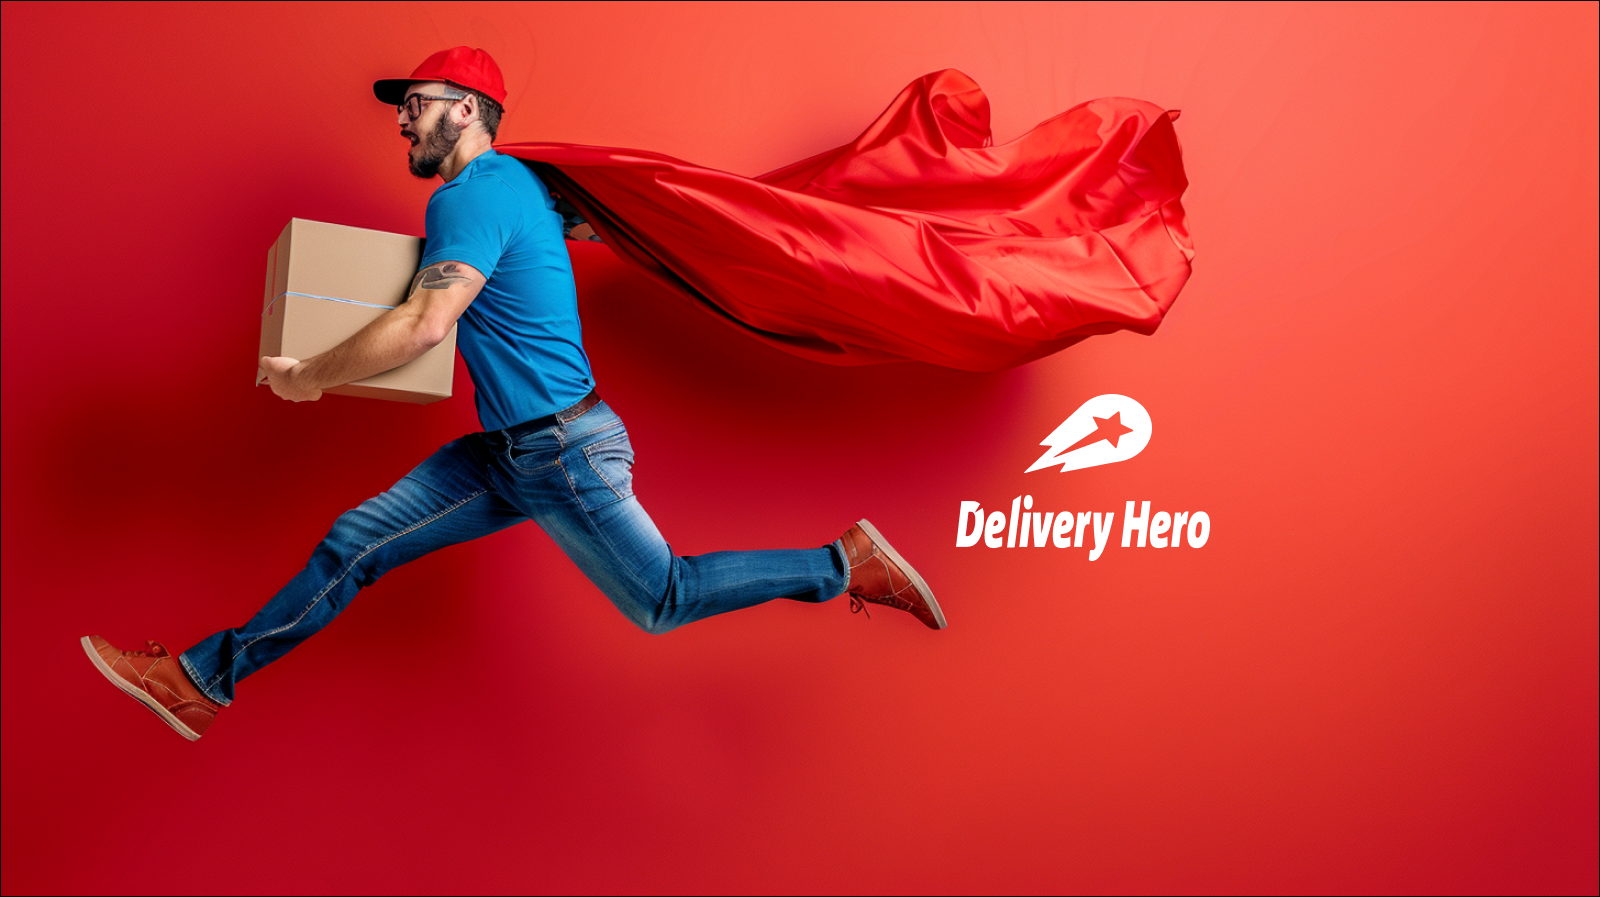 Ein Mann im Laufschritt mit rotem Umhang und Paket in der Hand vor einem roten Hintergrund mit dem Logo Delivery Hero.